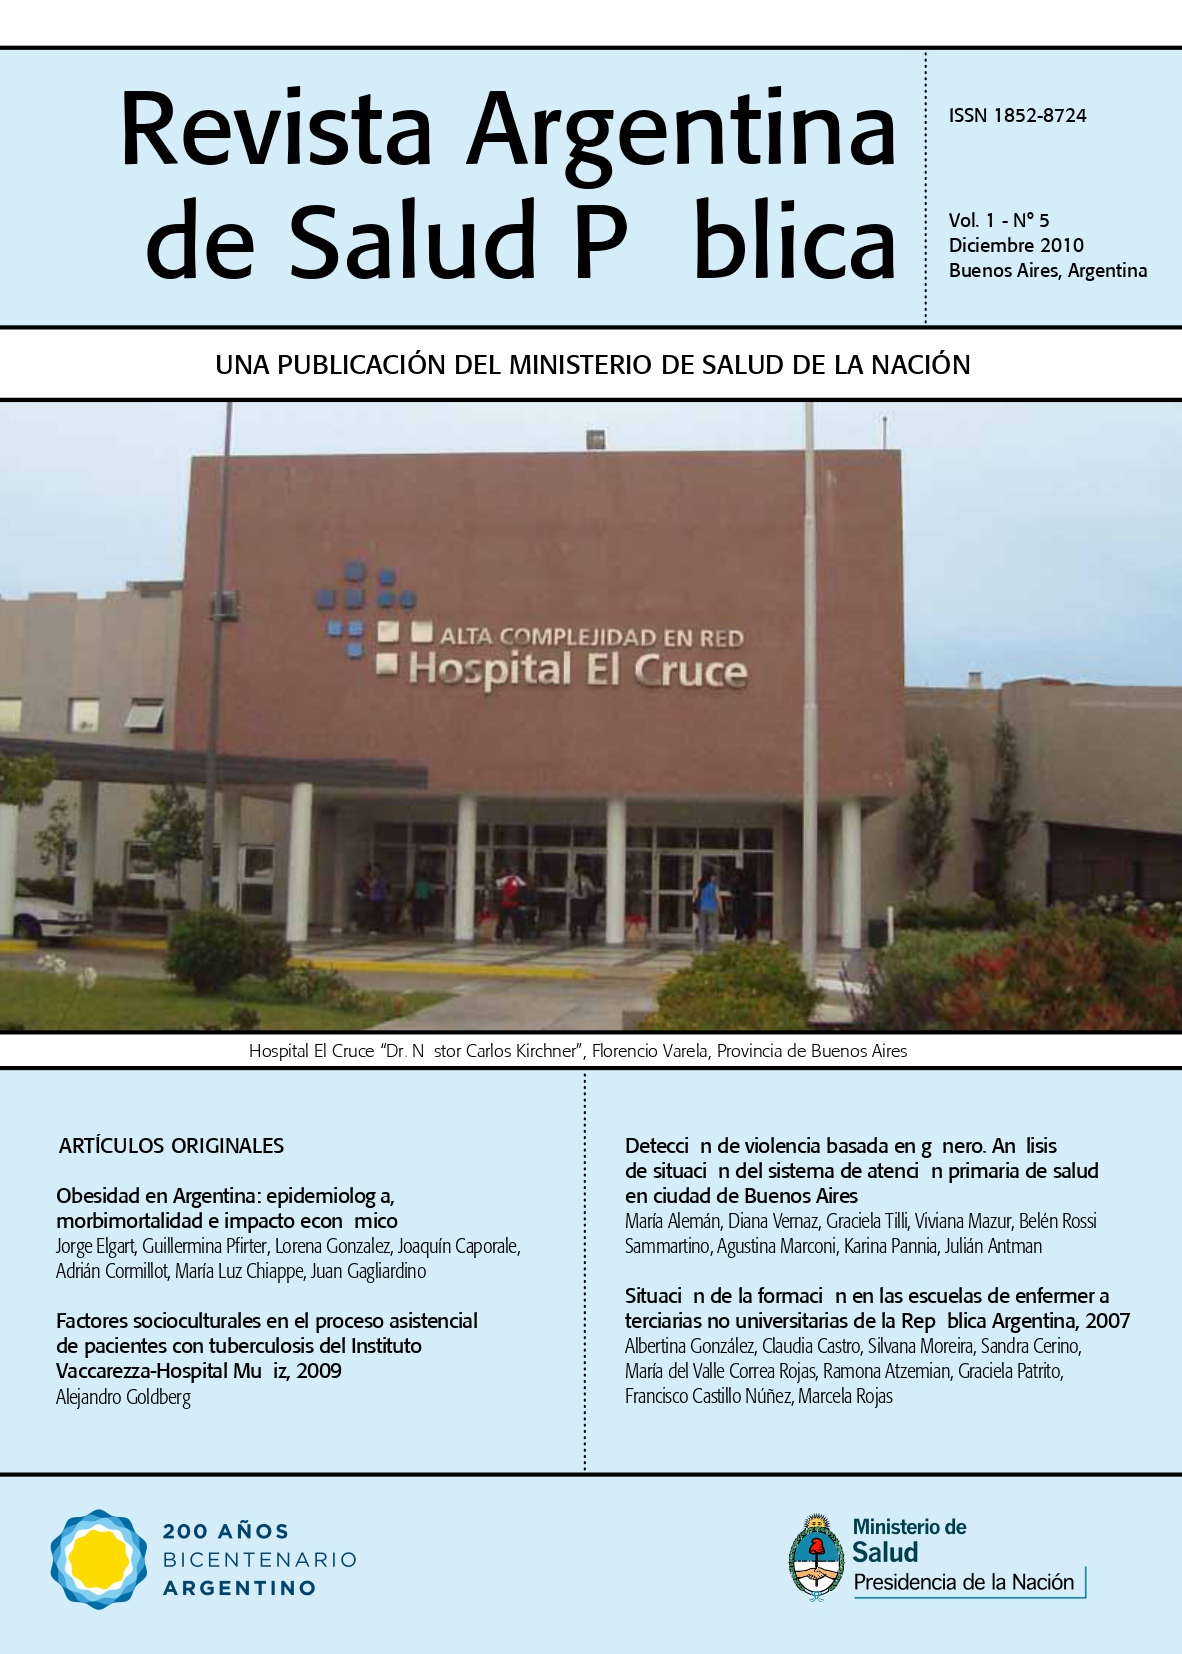 					Ver Vol. 1 Núm. 5 (2010): Revista Argentina de Salud Pública
				